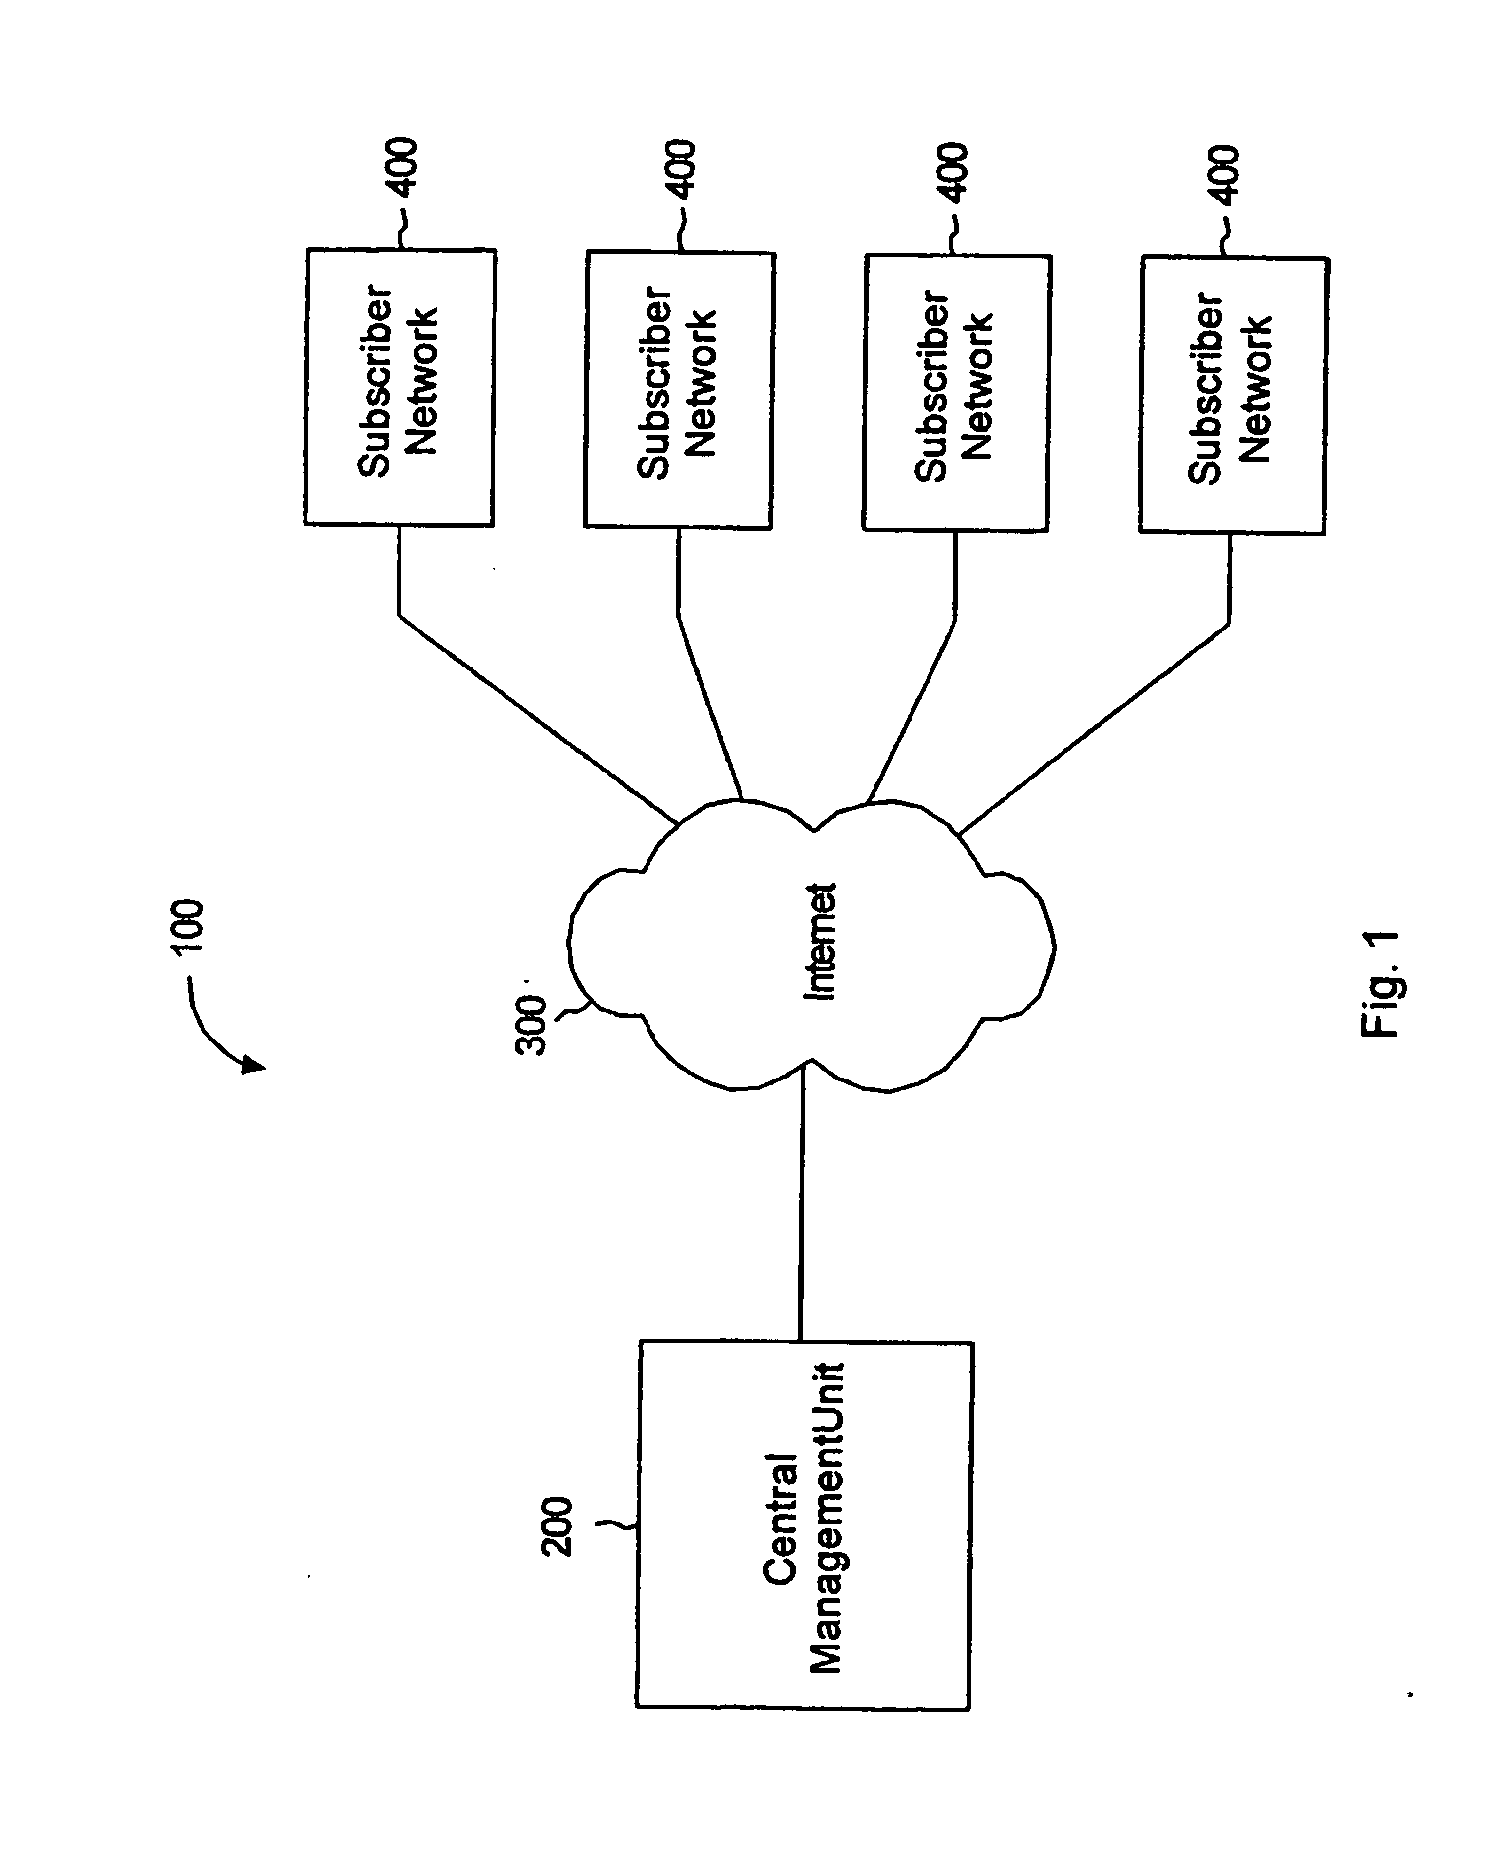 Multi-network monitoring architecture